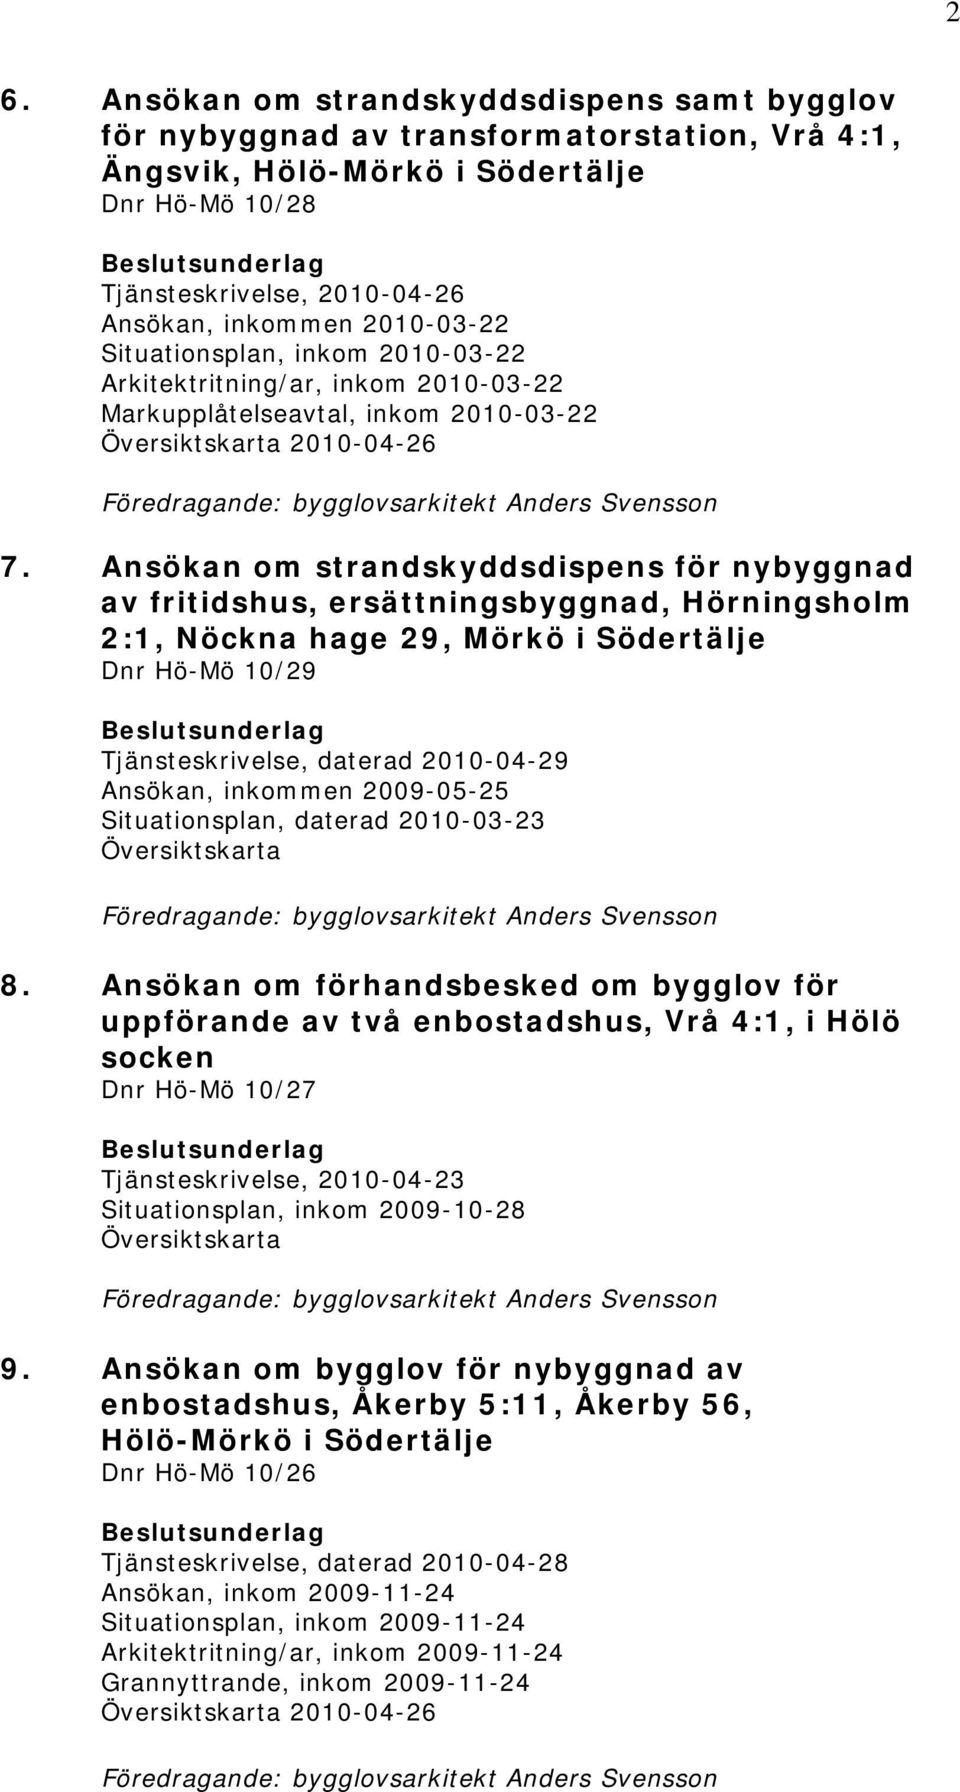 Ansökan om strandskyddsdispens för nybyggnad av fritidshus, ersättningsbyggnad, Hörningsholm 2:1, Nöckna hage 29, Mörkö i Södertälje 10/29 Tjänsteskrivelse, daterad 2010-04-29 Ansökan, inkommen